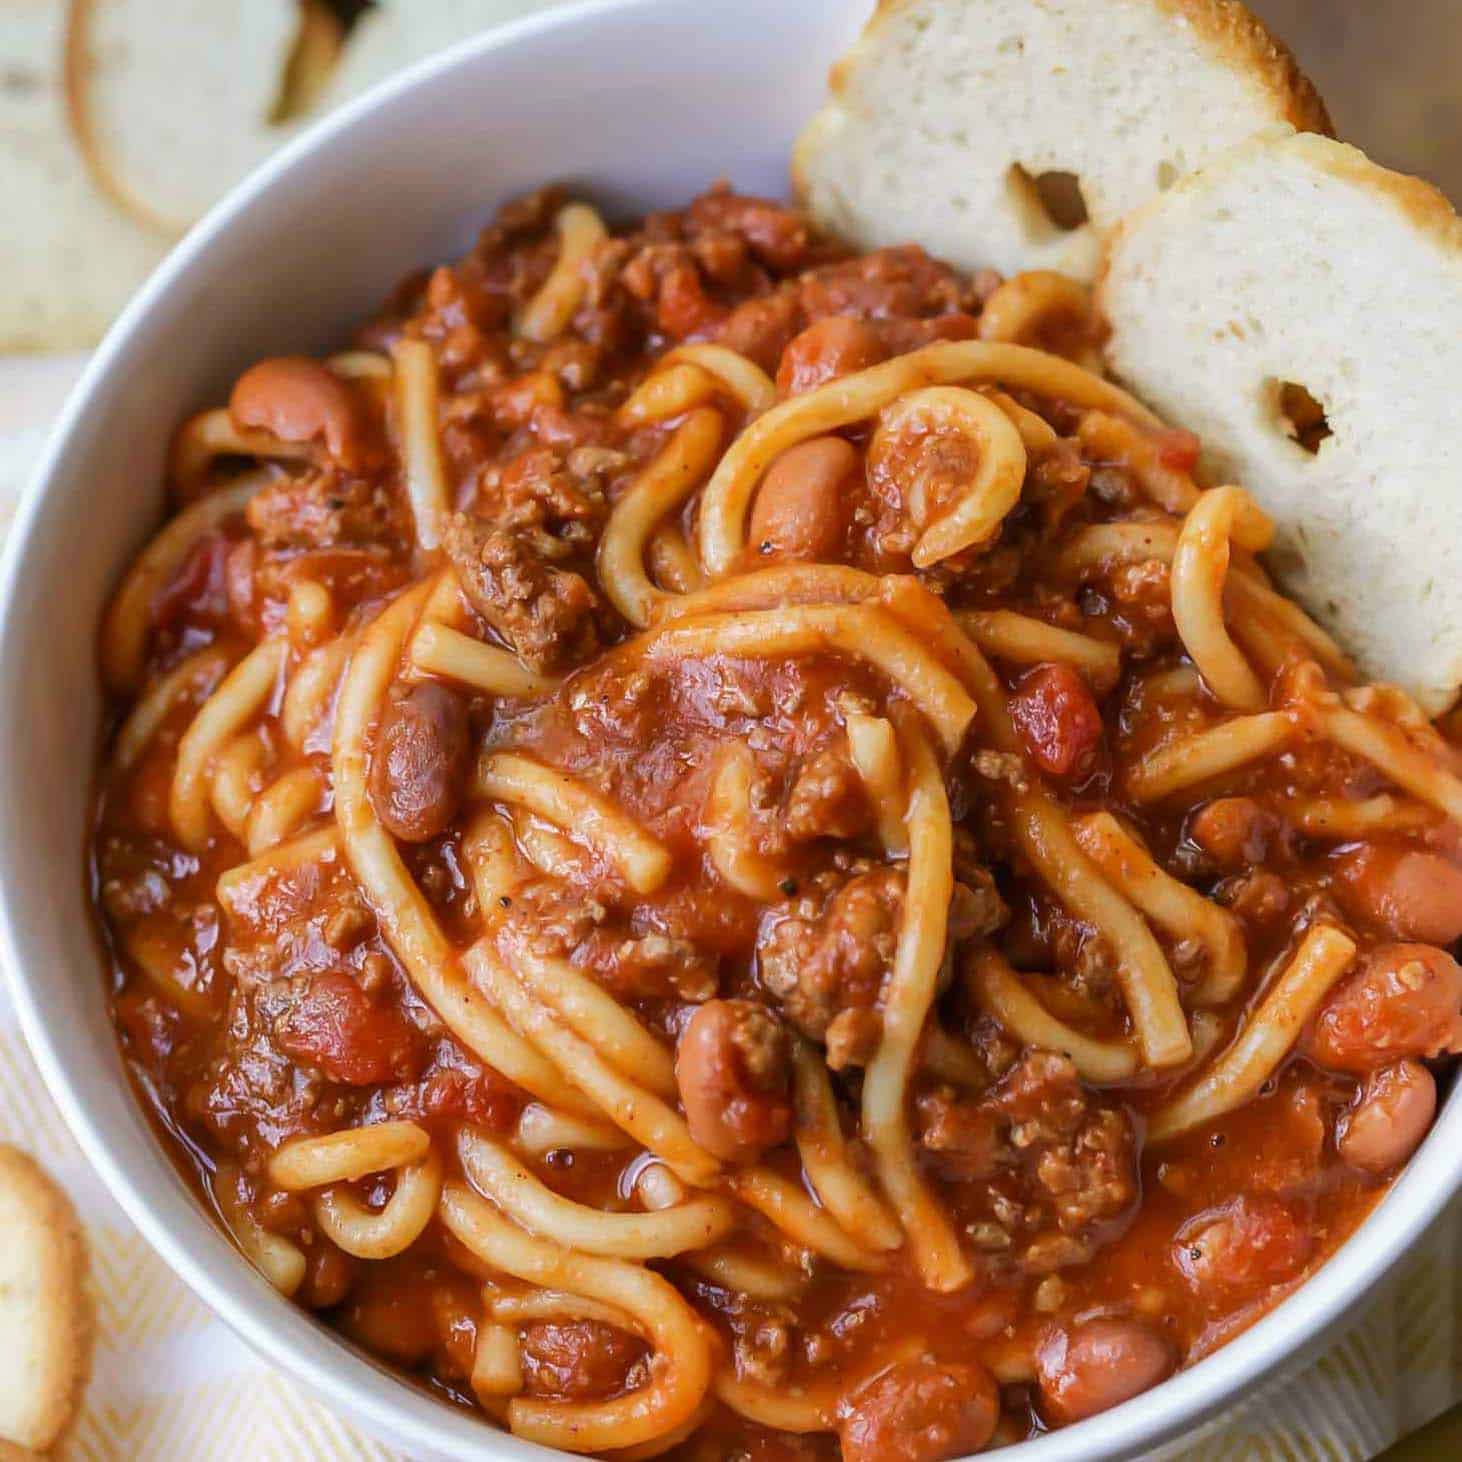 Chilli spaghetti